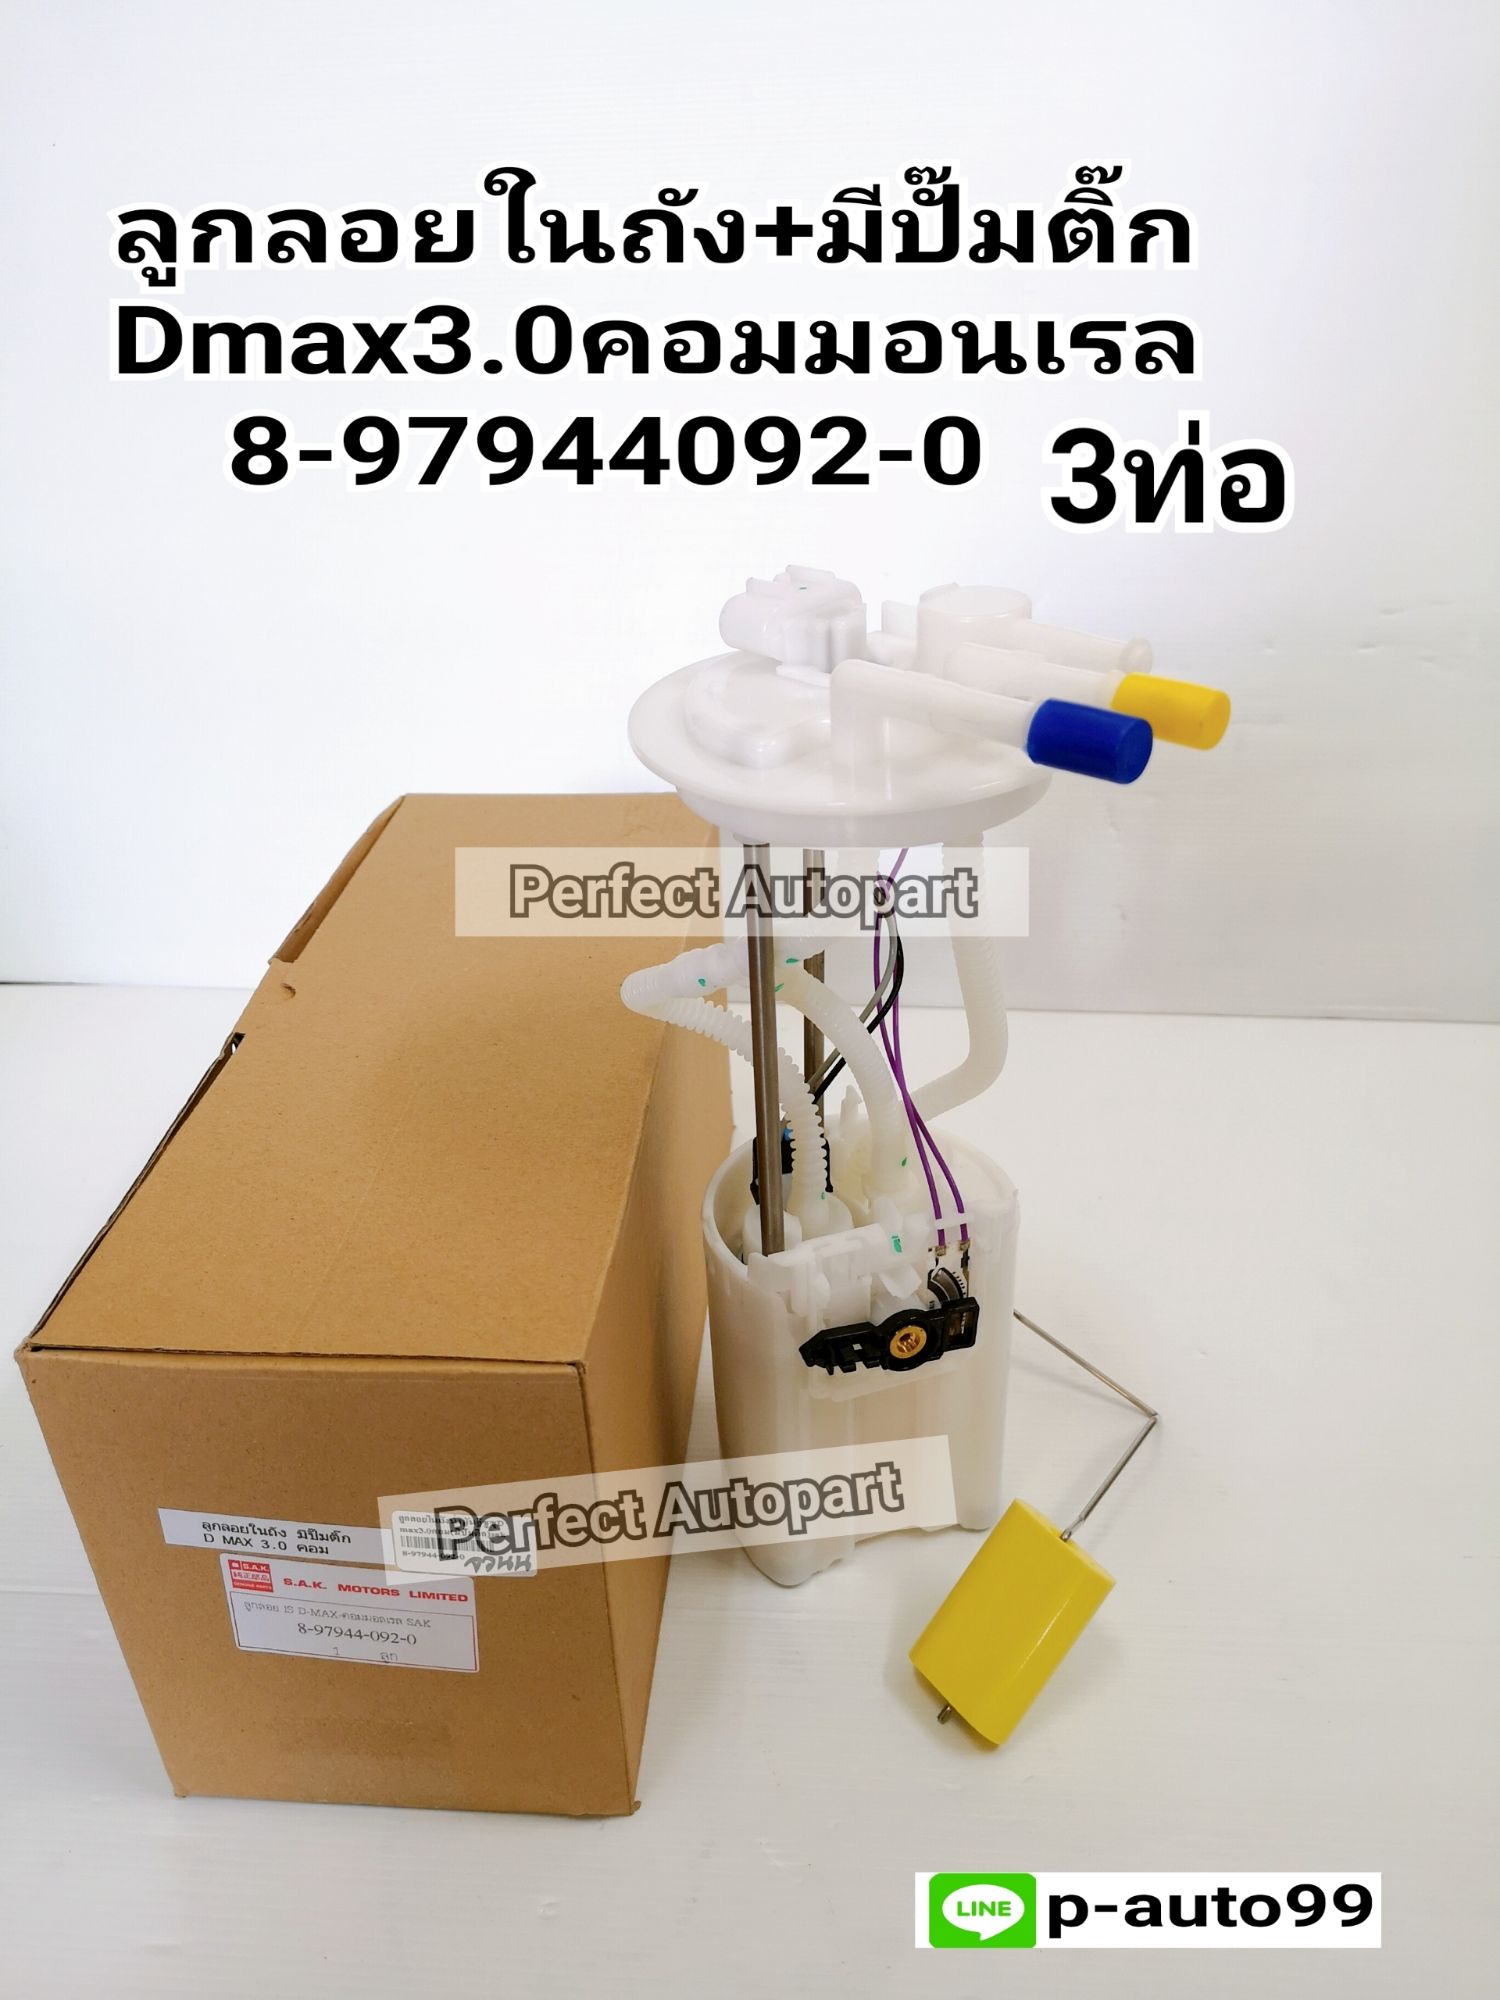 ลูกลอยในถังน้ำมันISUZU Dmax3.0คอมมอนเรล(มีปั๊มติ๊ก)3ท่อ8-97944092-0